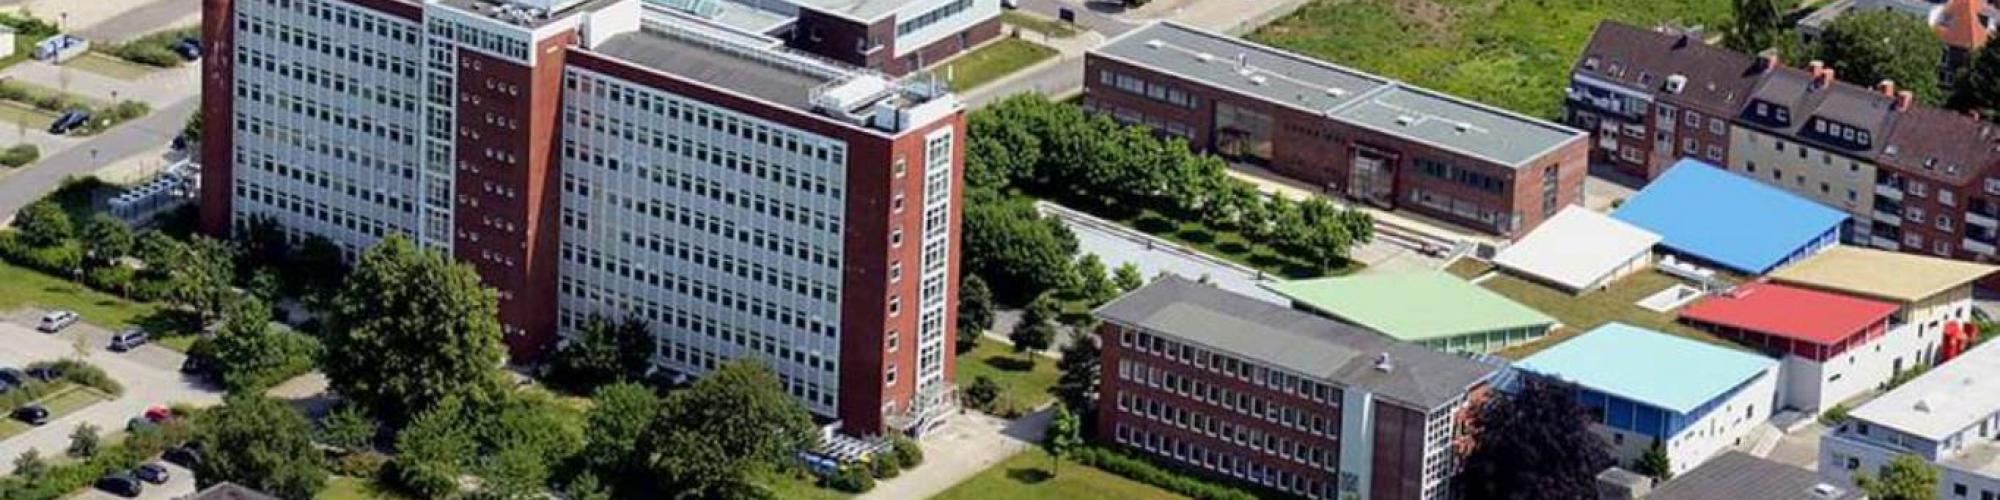 Fachhochschule Kiel University of Applied Sciences